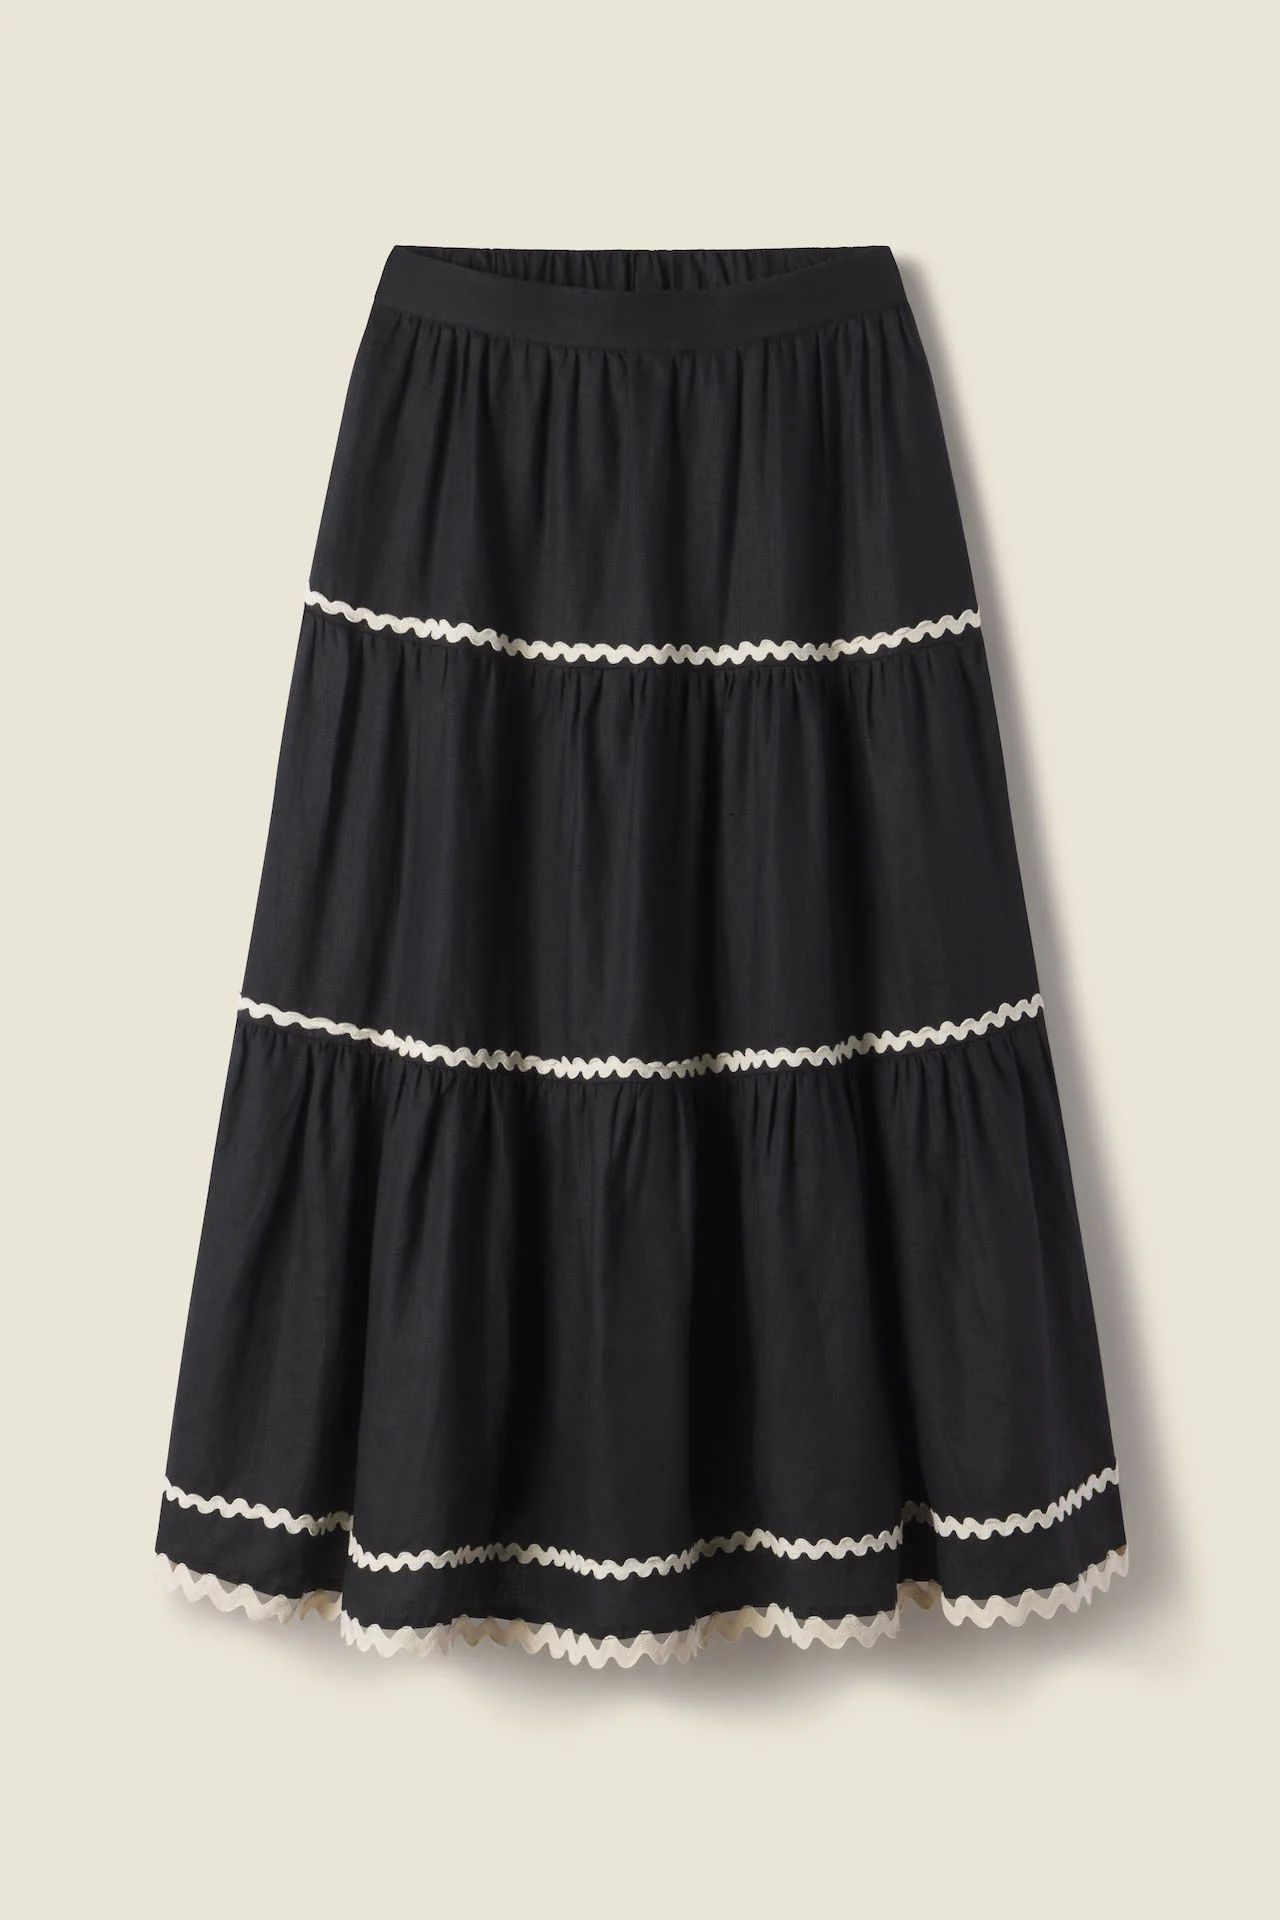 Makena "C" Skirt Black Linen | TROVATA